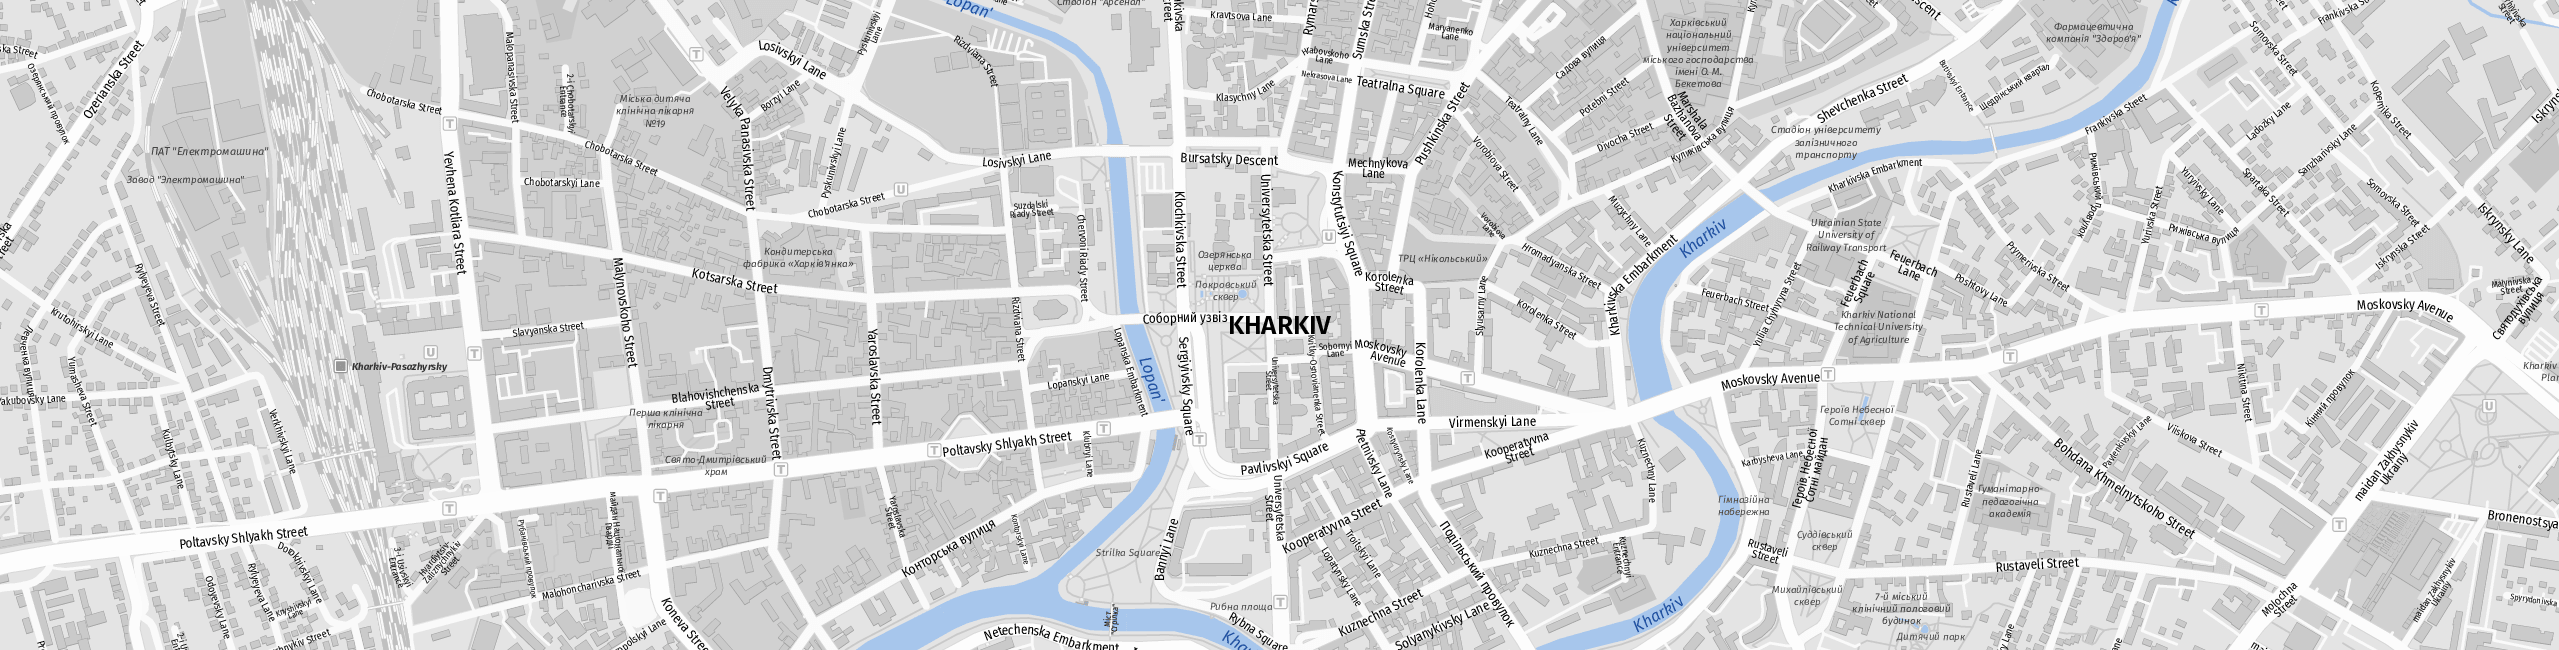 Stadtplan Charkiw zum Downloaden.